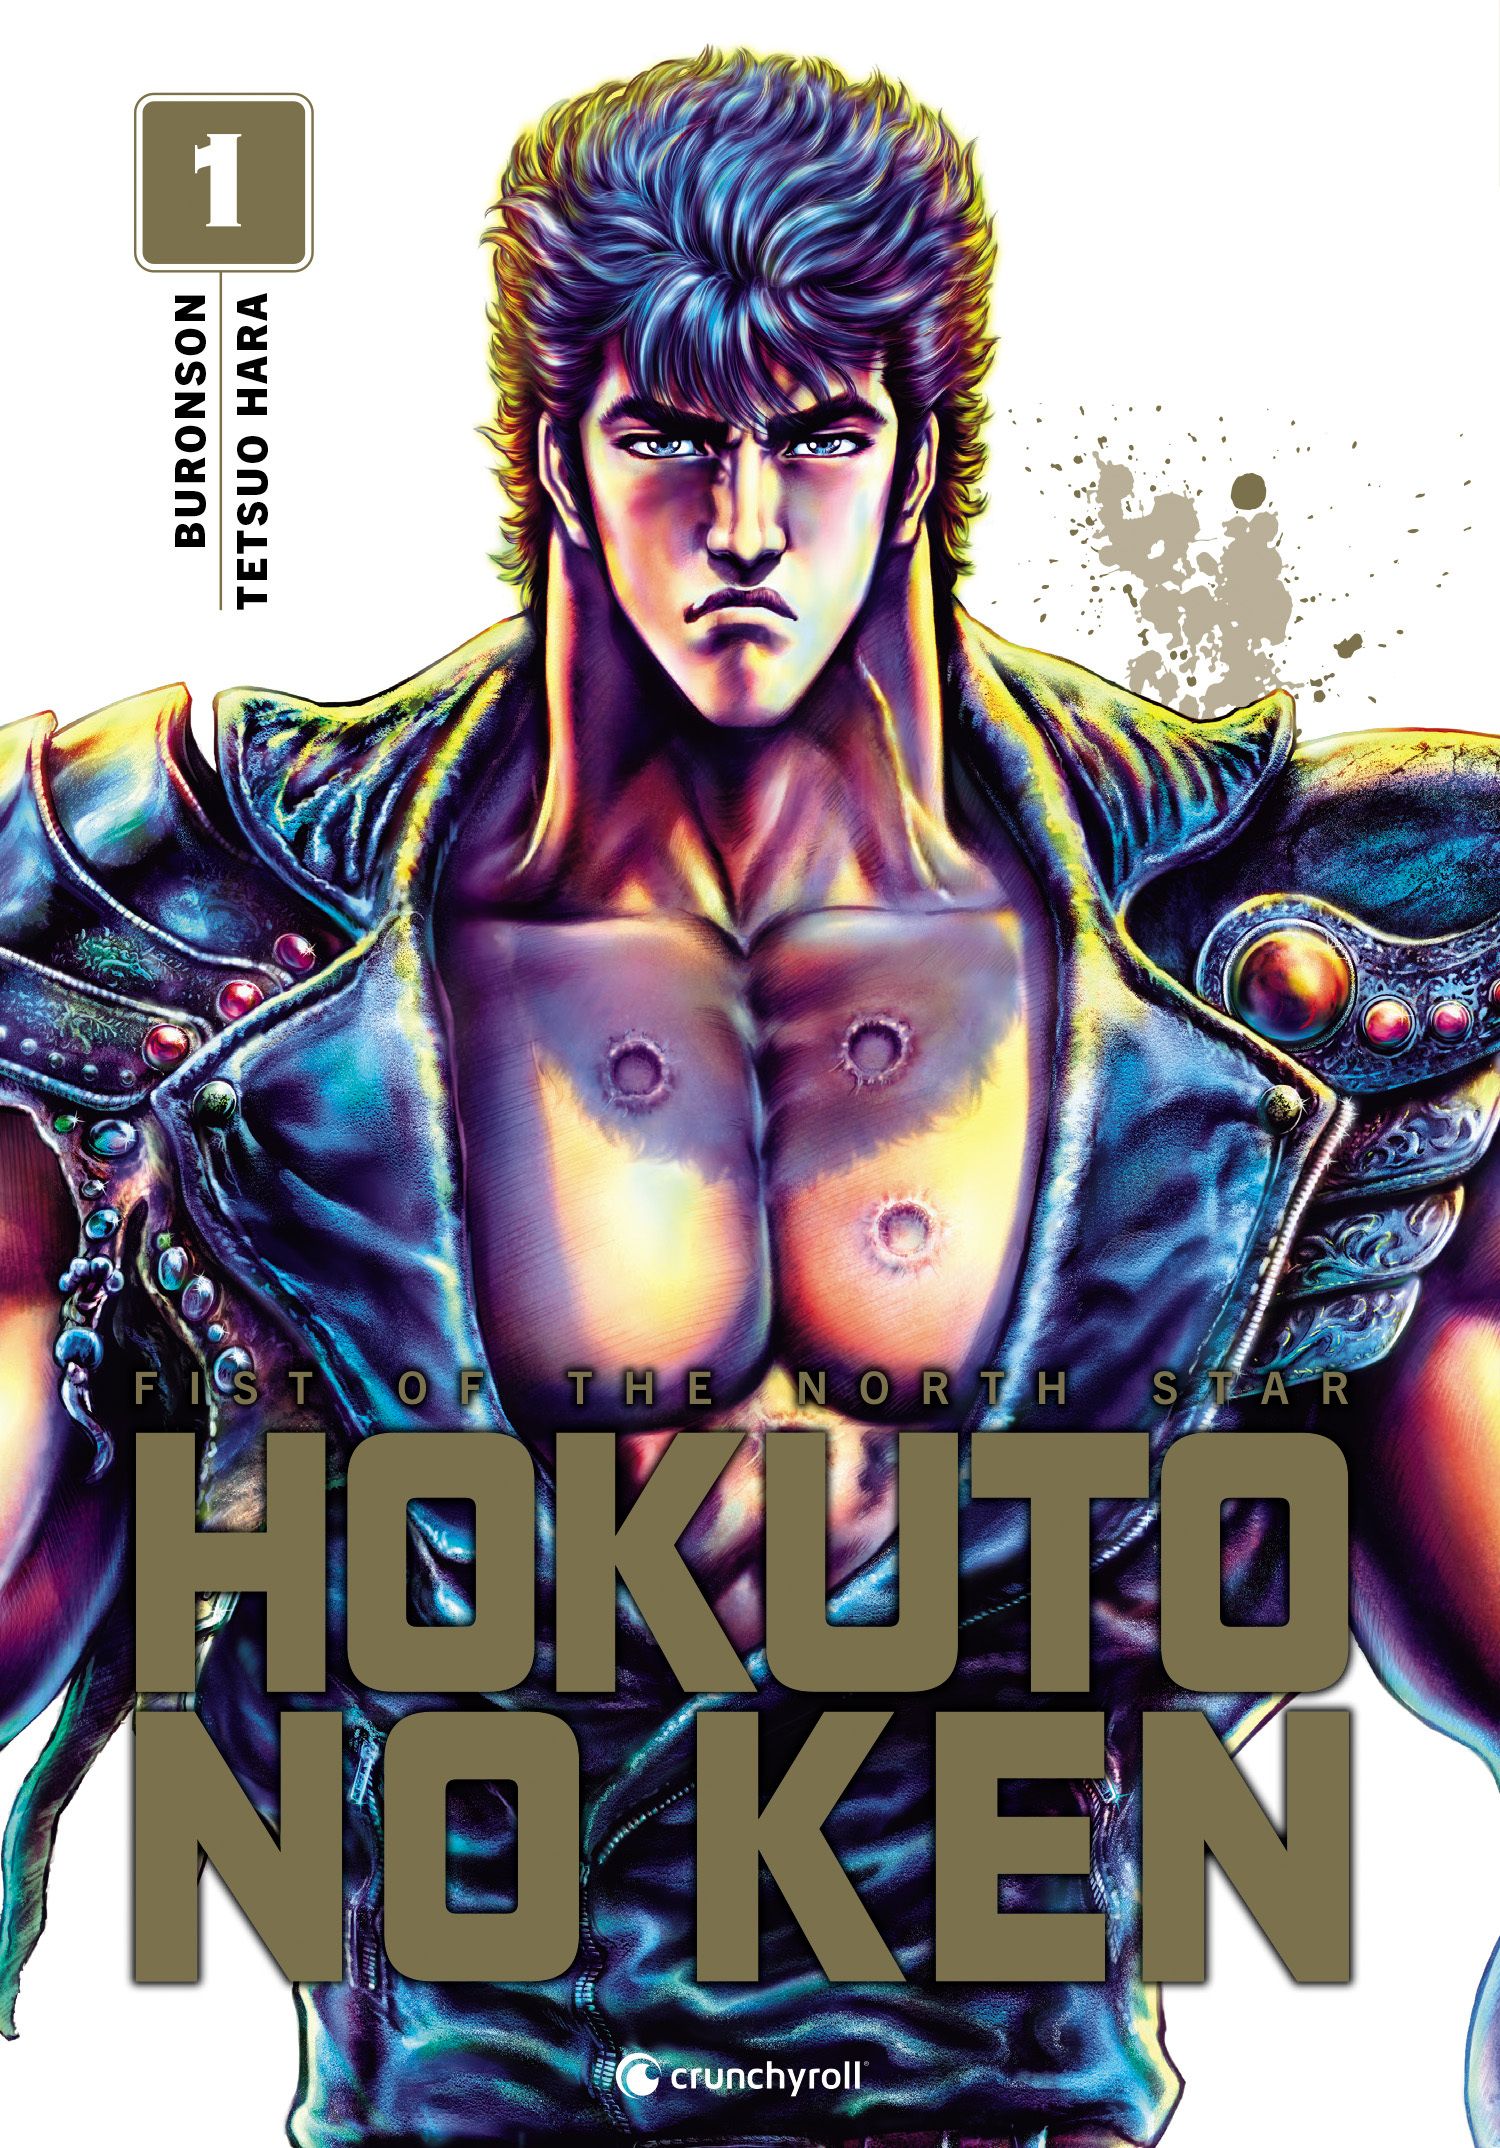 Hokuto No Ken - Extreme Edition